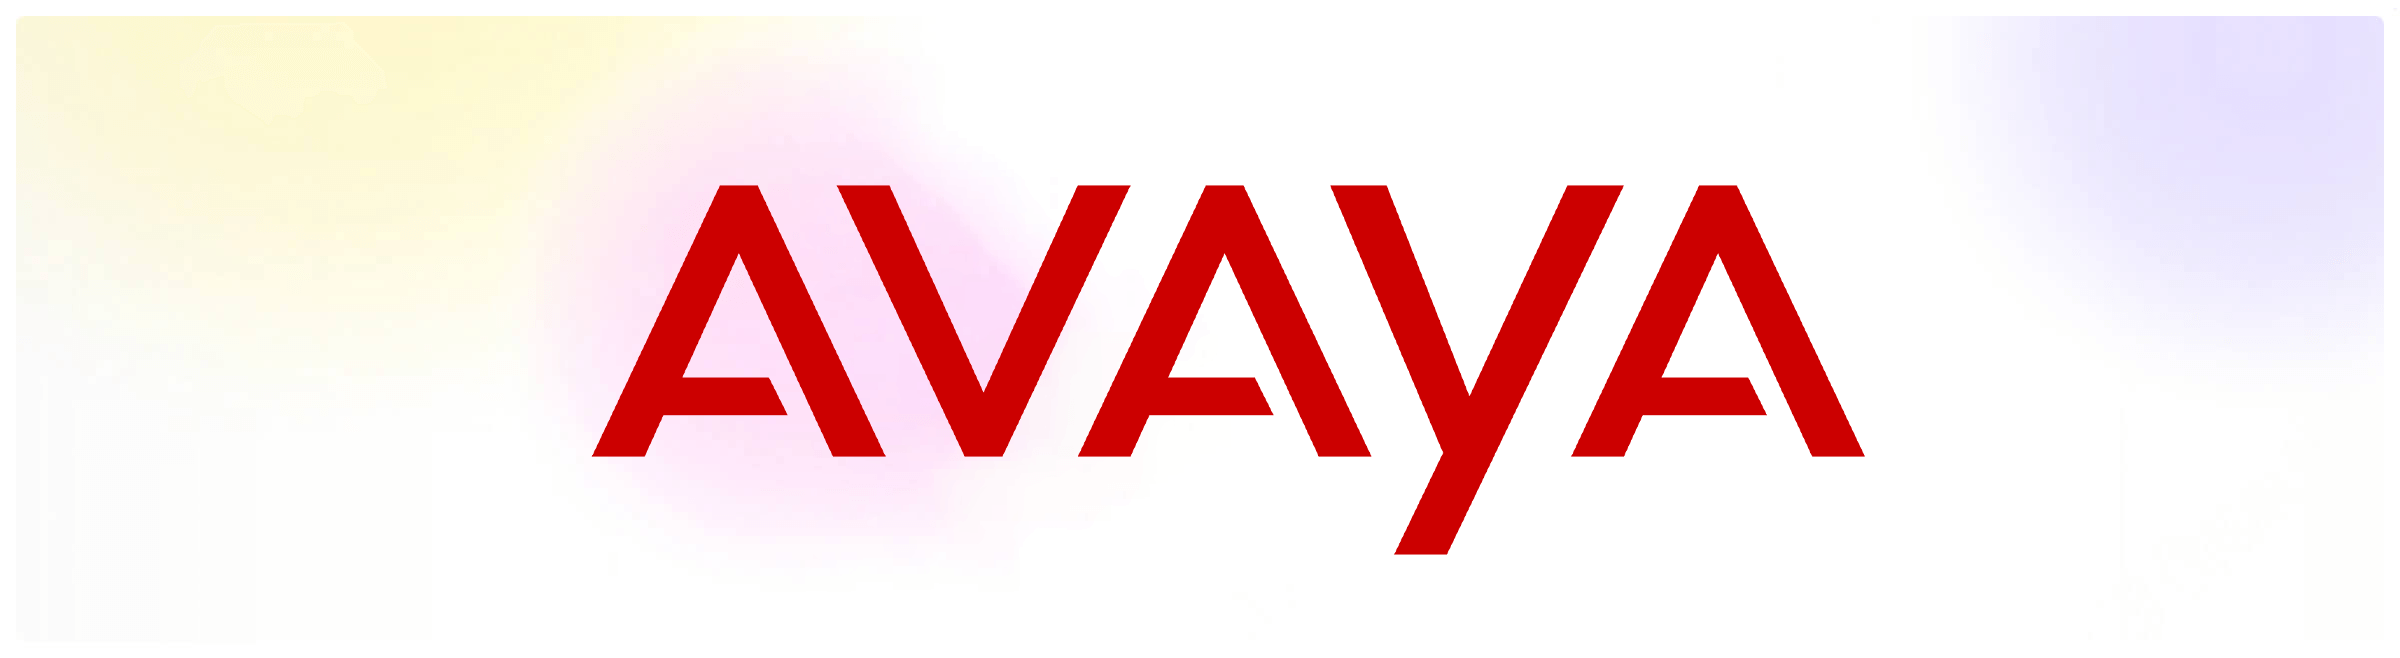 avaya logo (1)